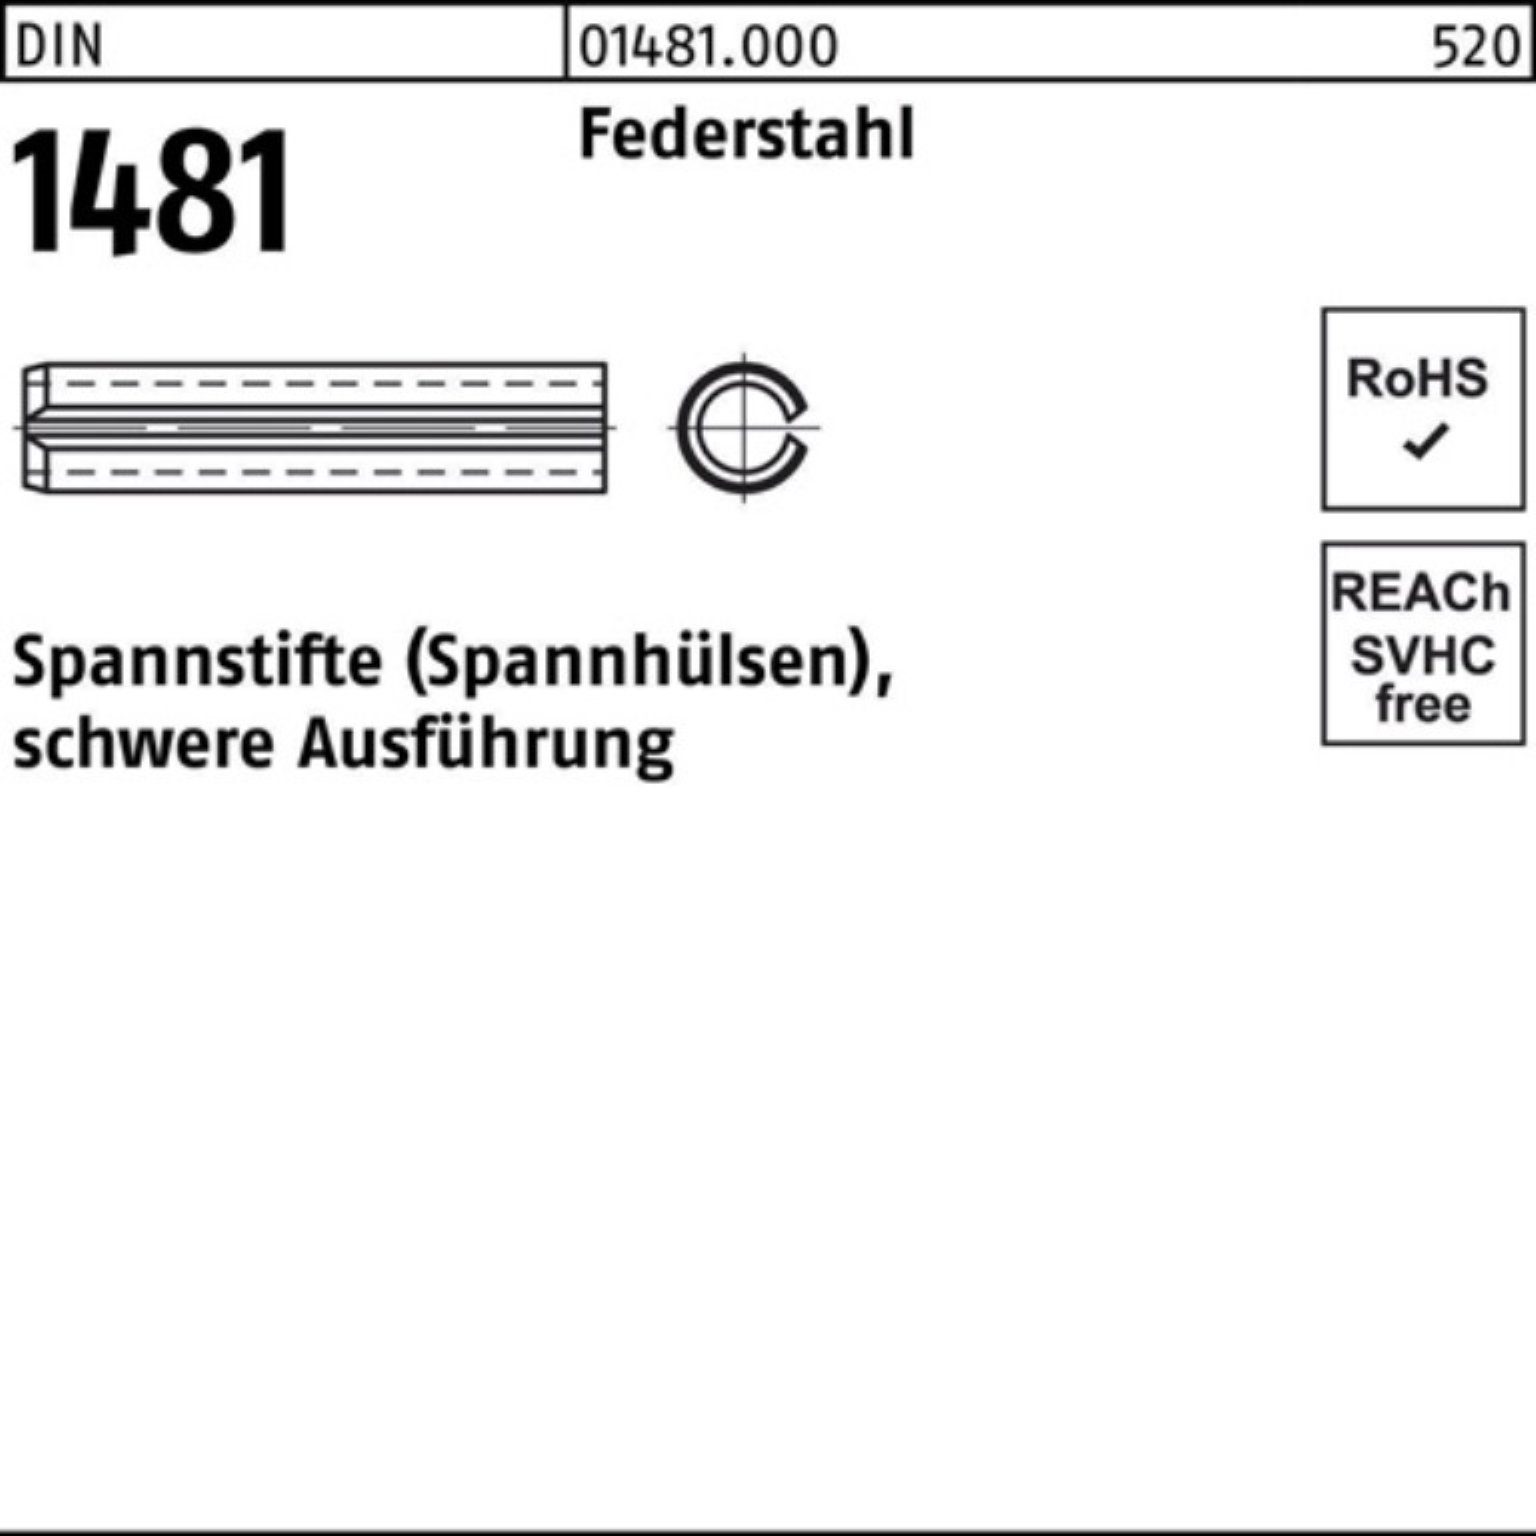 Reyher Spannstift 200er Pack Spannstift DIN 1481 3x 14 Federstahl schwere Ausführung 20